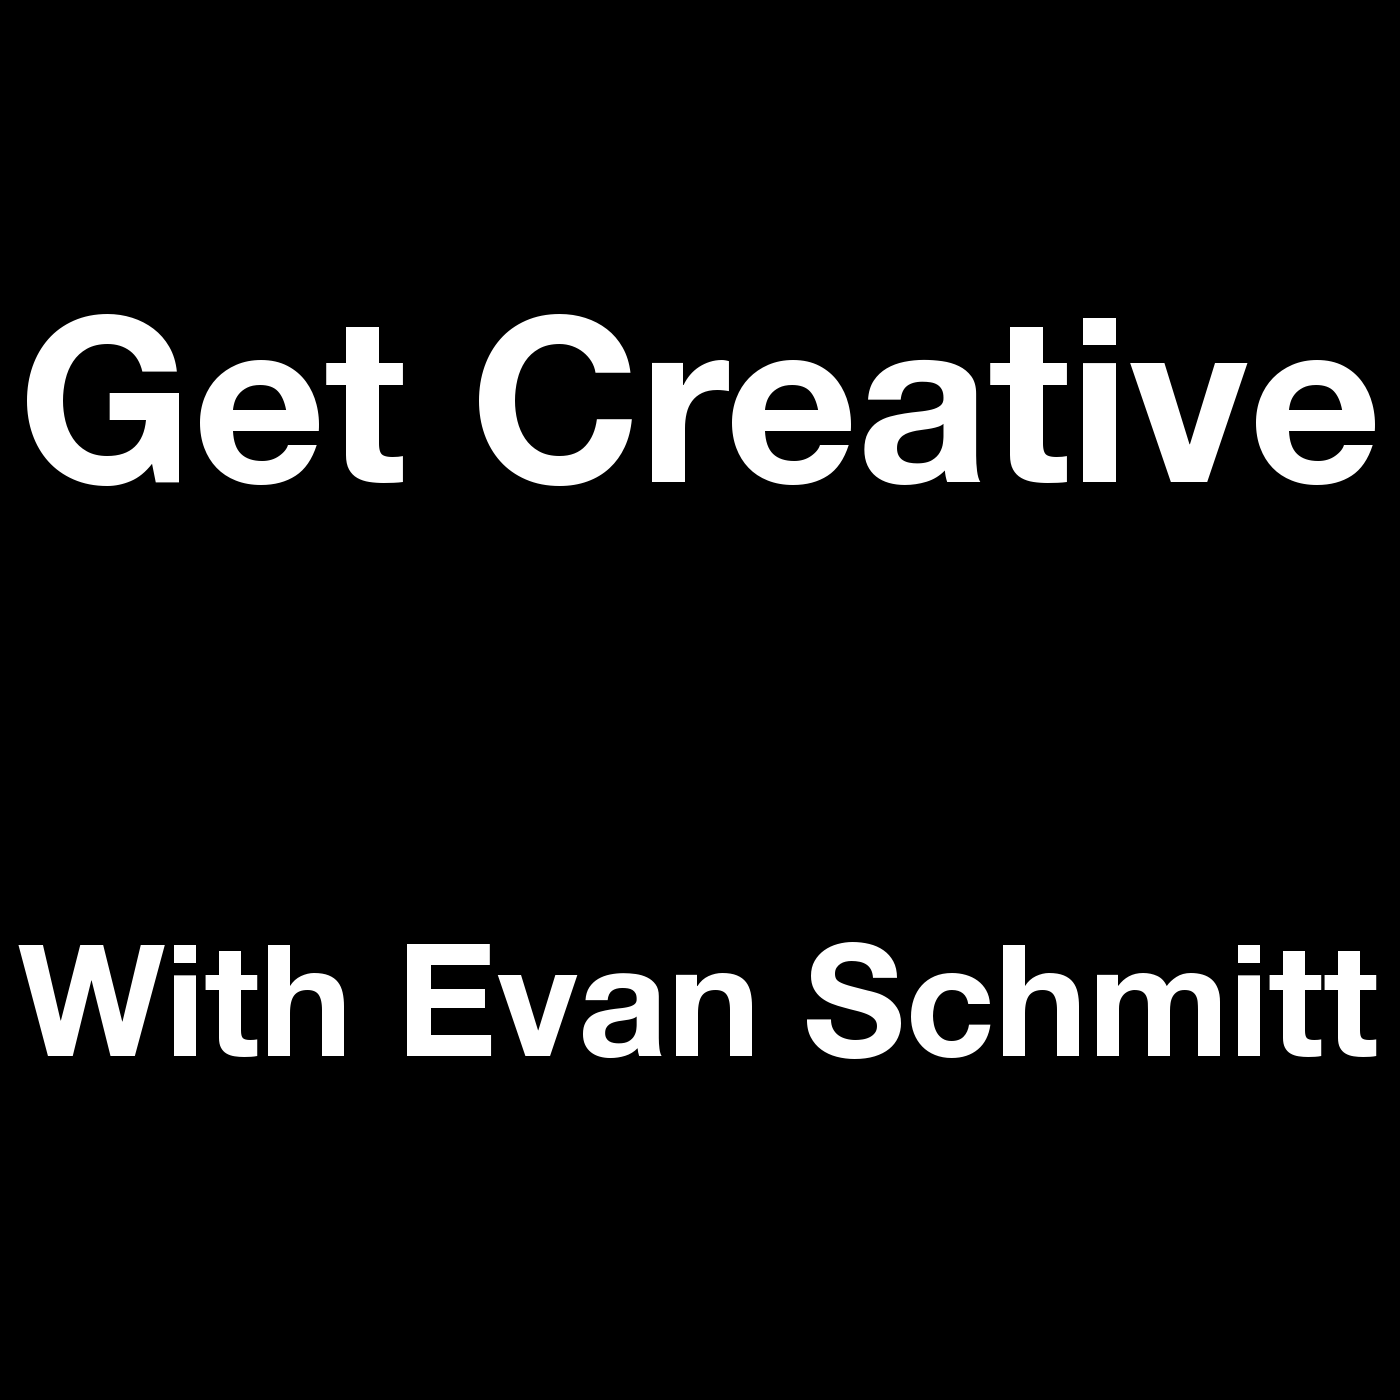 Get Creative with Evan Schmitt